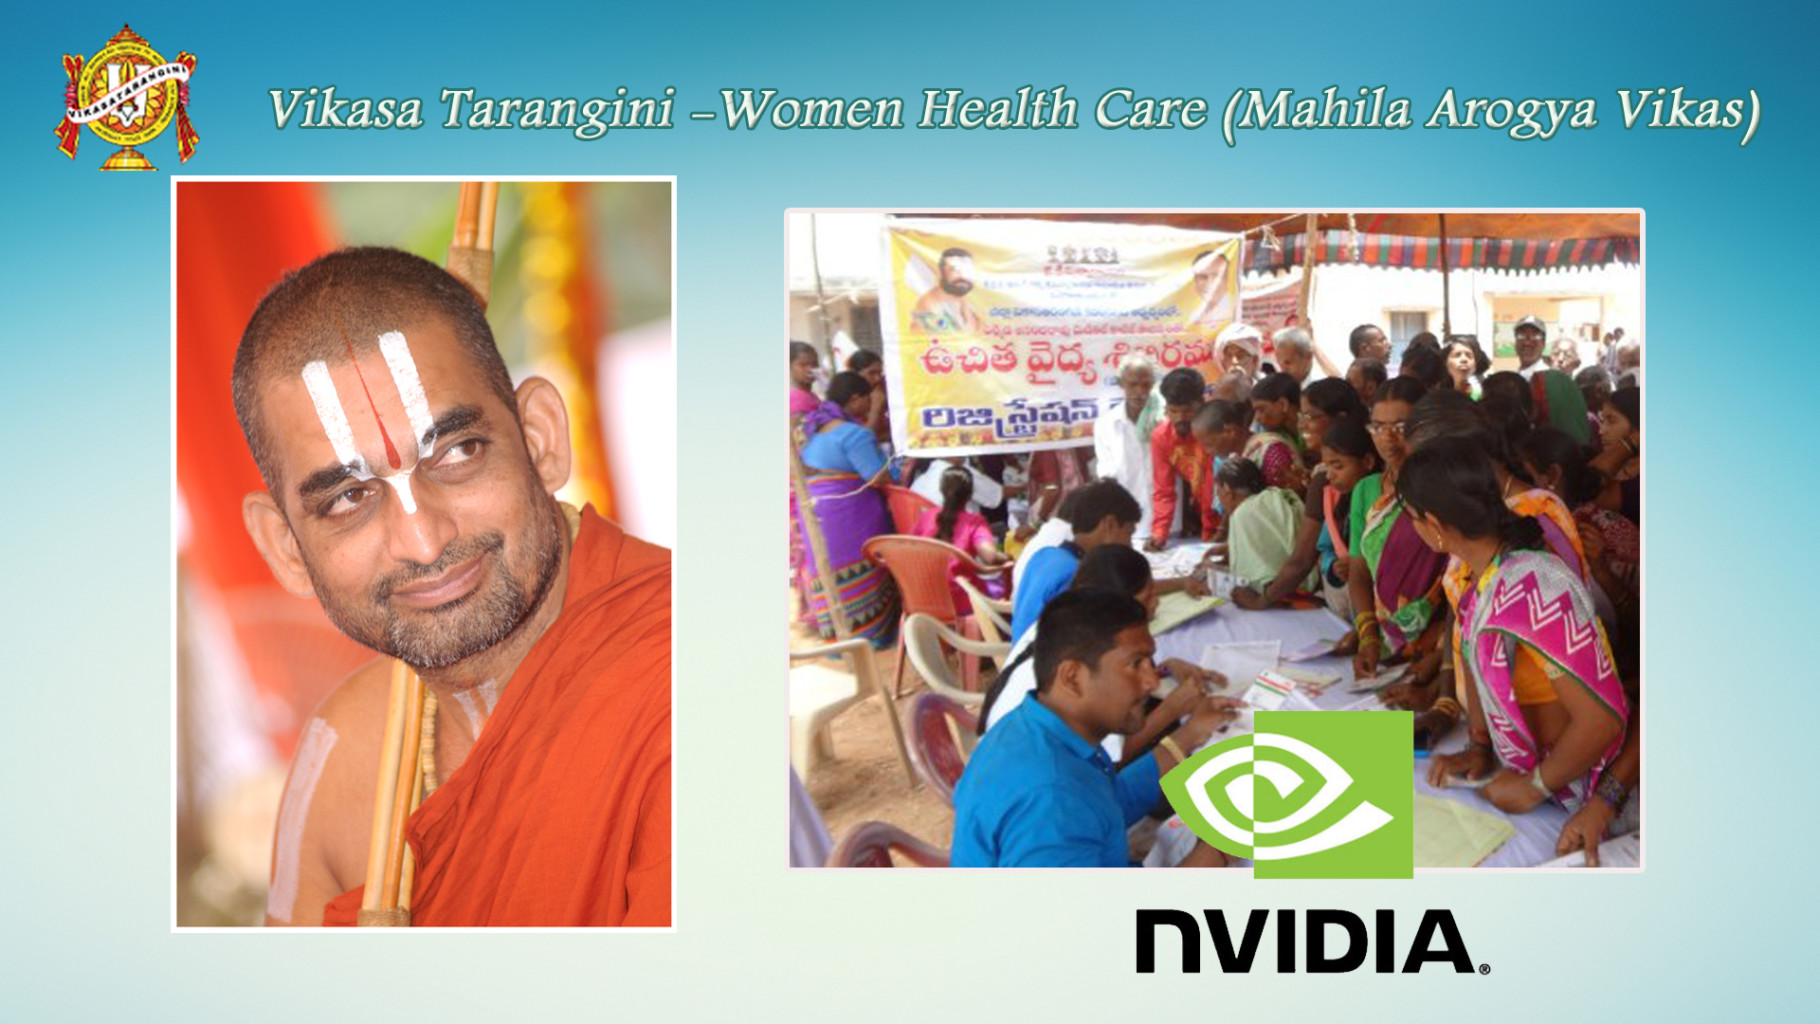 Vikasa Tarangini & VT Seva wins NVIDIA grant of $50,000 towards conducting 50 more medical camps!